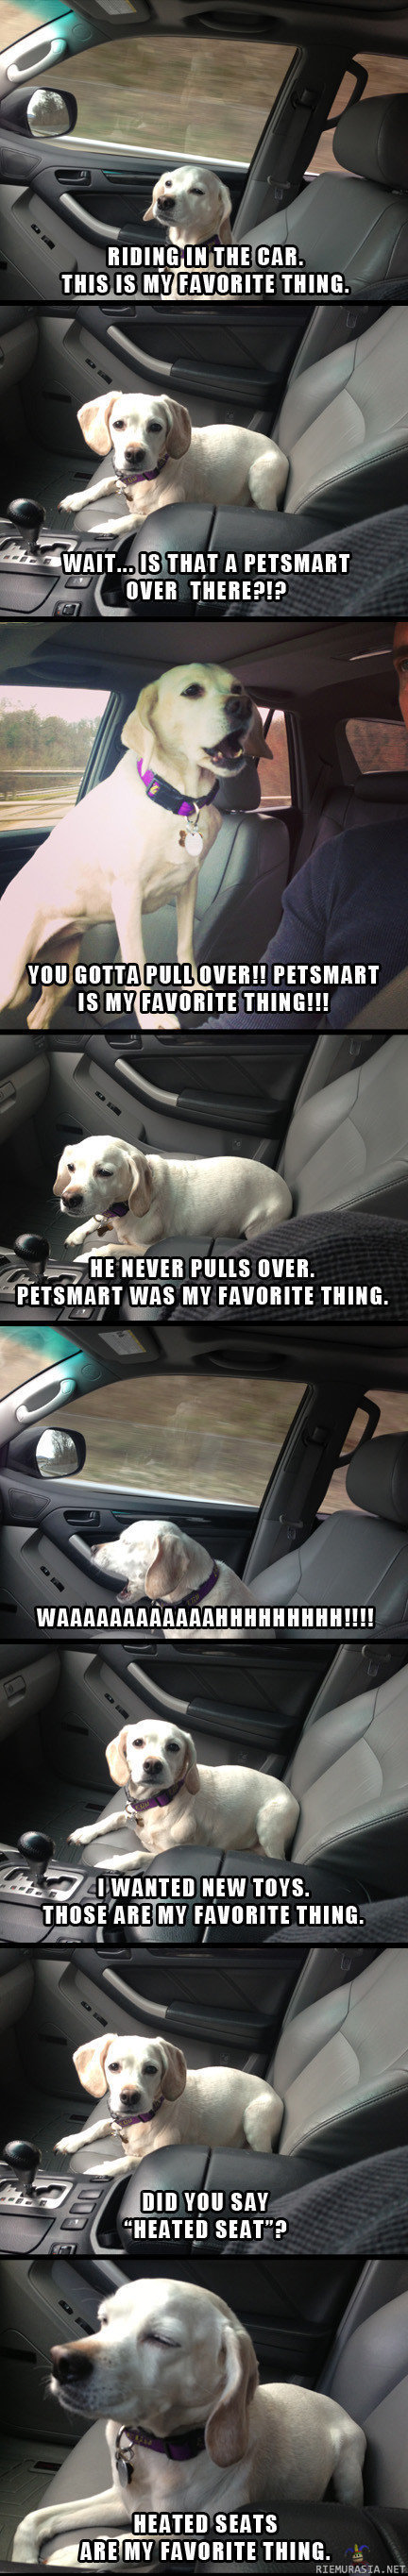 Koira autossa - samaistuin